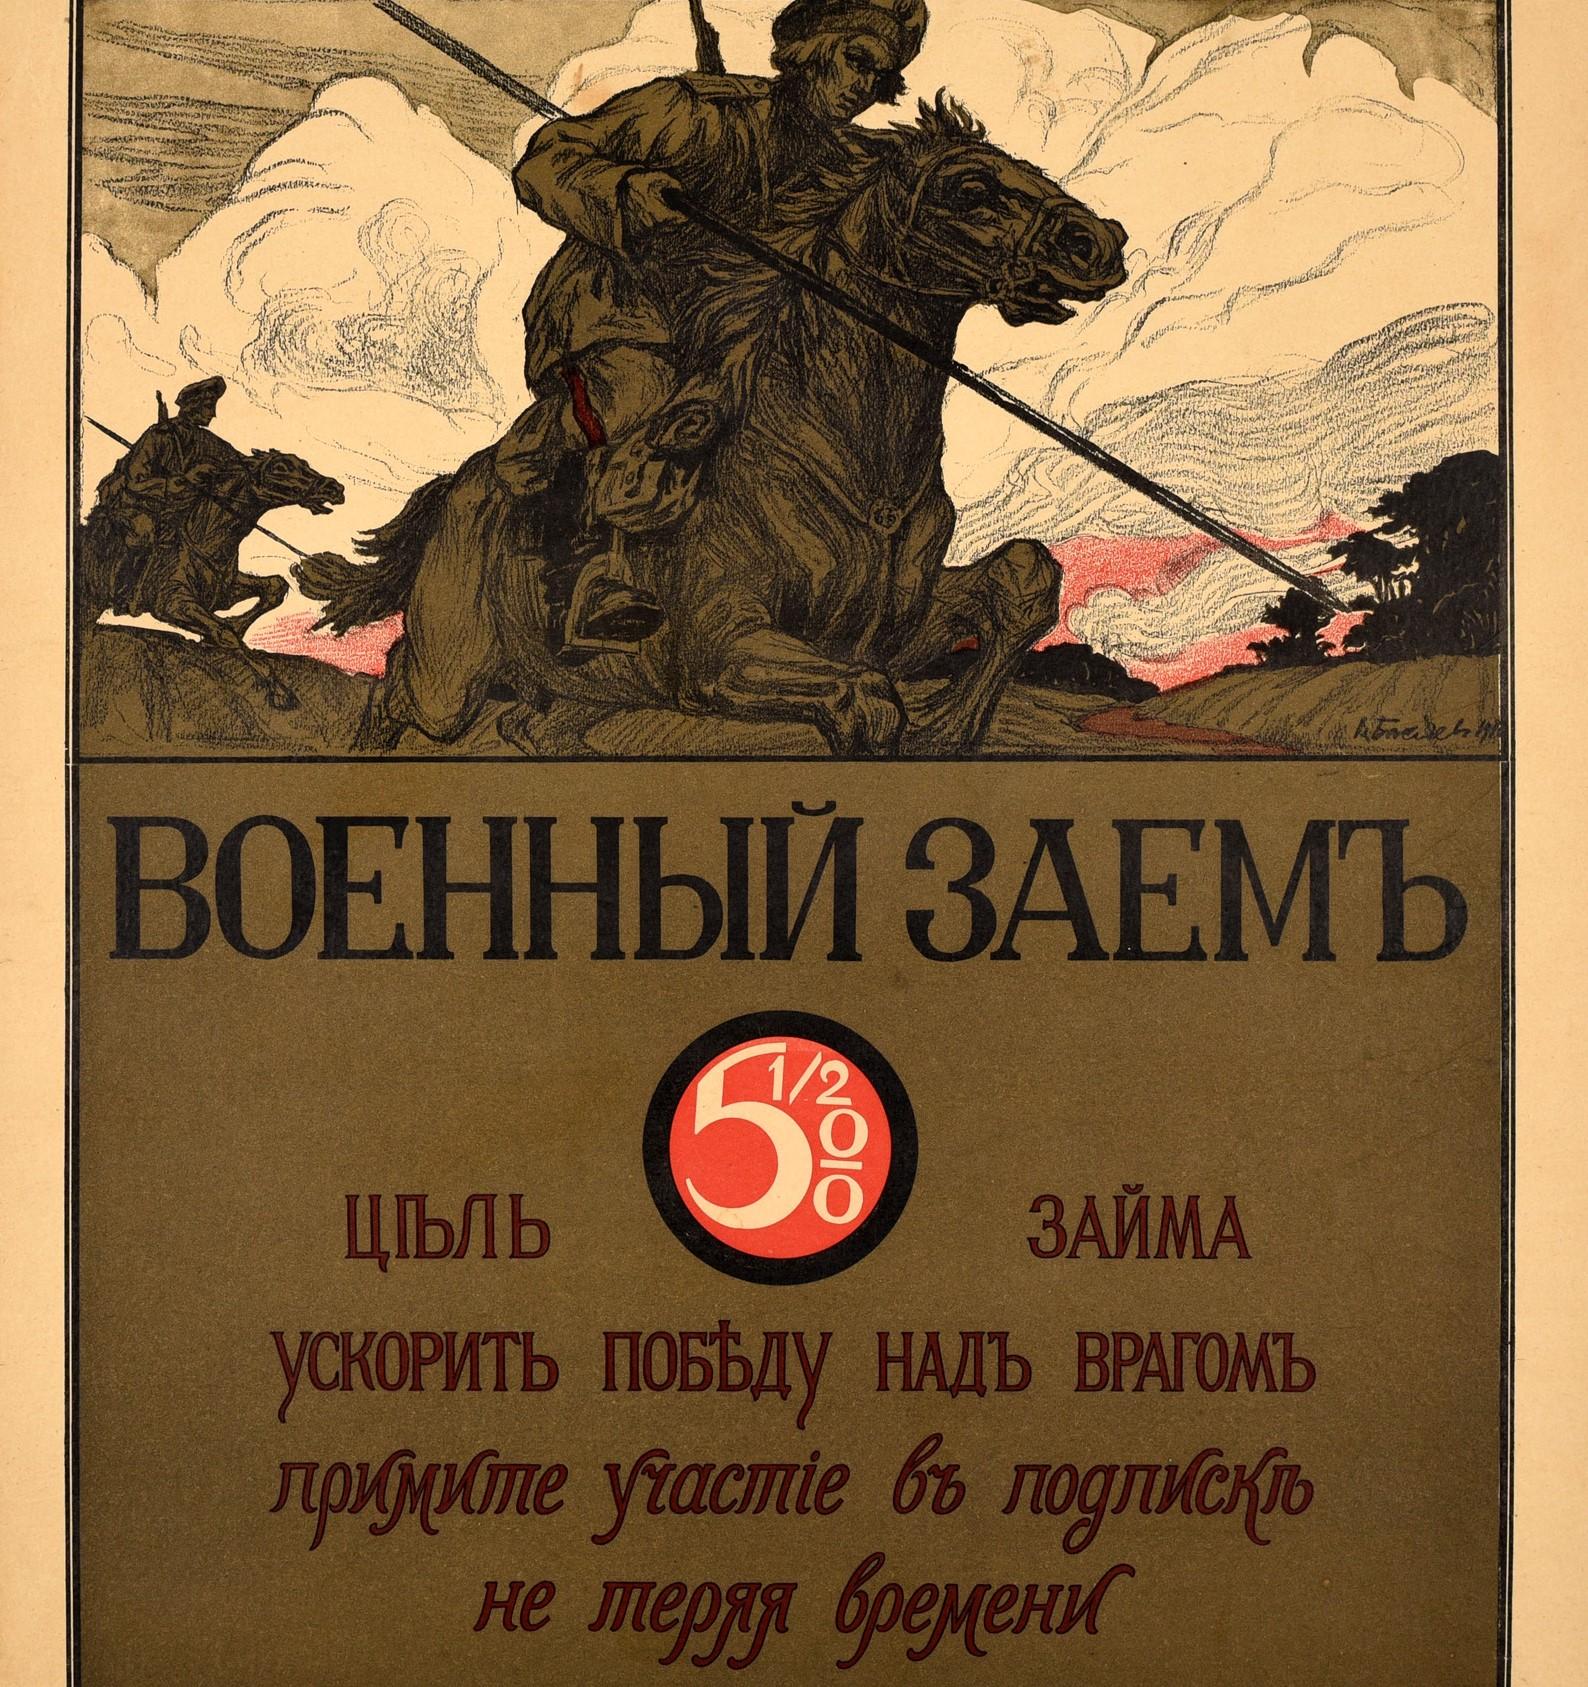 Originales antikes Plakat aus dem Ersten Weltkrieg - Kriegsanleihe Das Ziel der Anleihe ist es, den Sieg über den Feind zu beschleunigen Nehmen Sie unverzüglich an der Anleihezeichnung teil - mit dem stilisierten Schriftzug mit 5 1/2 % in Weiß in